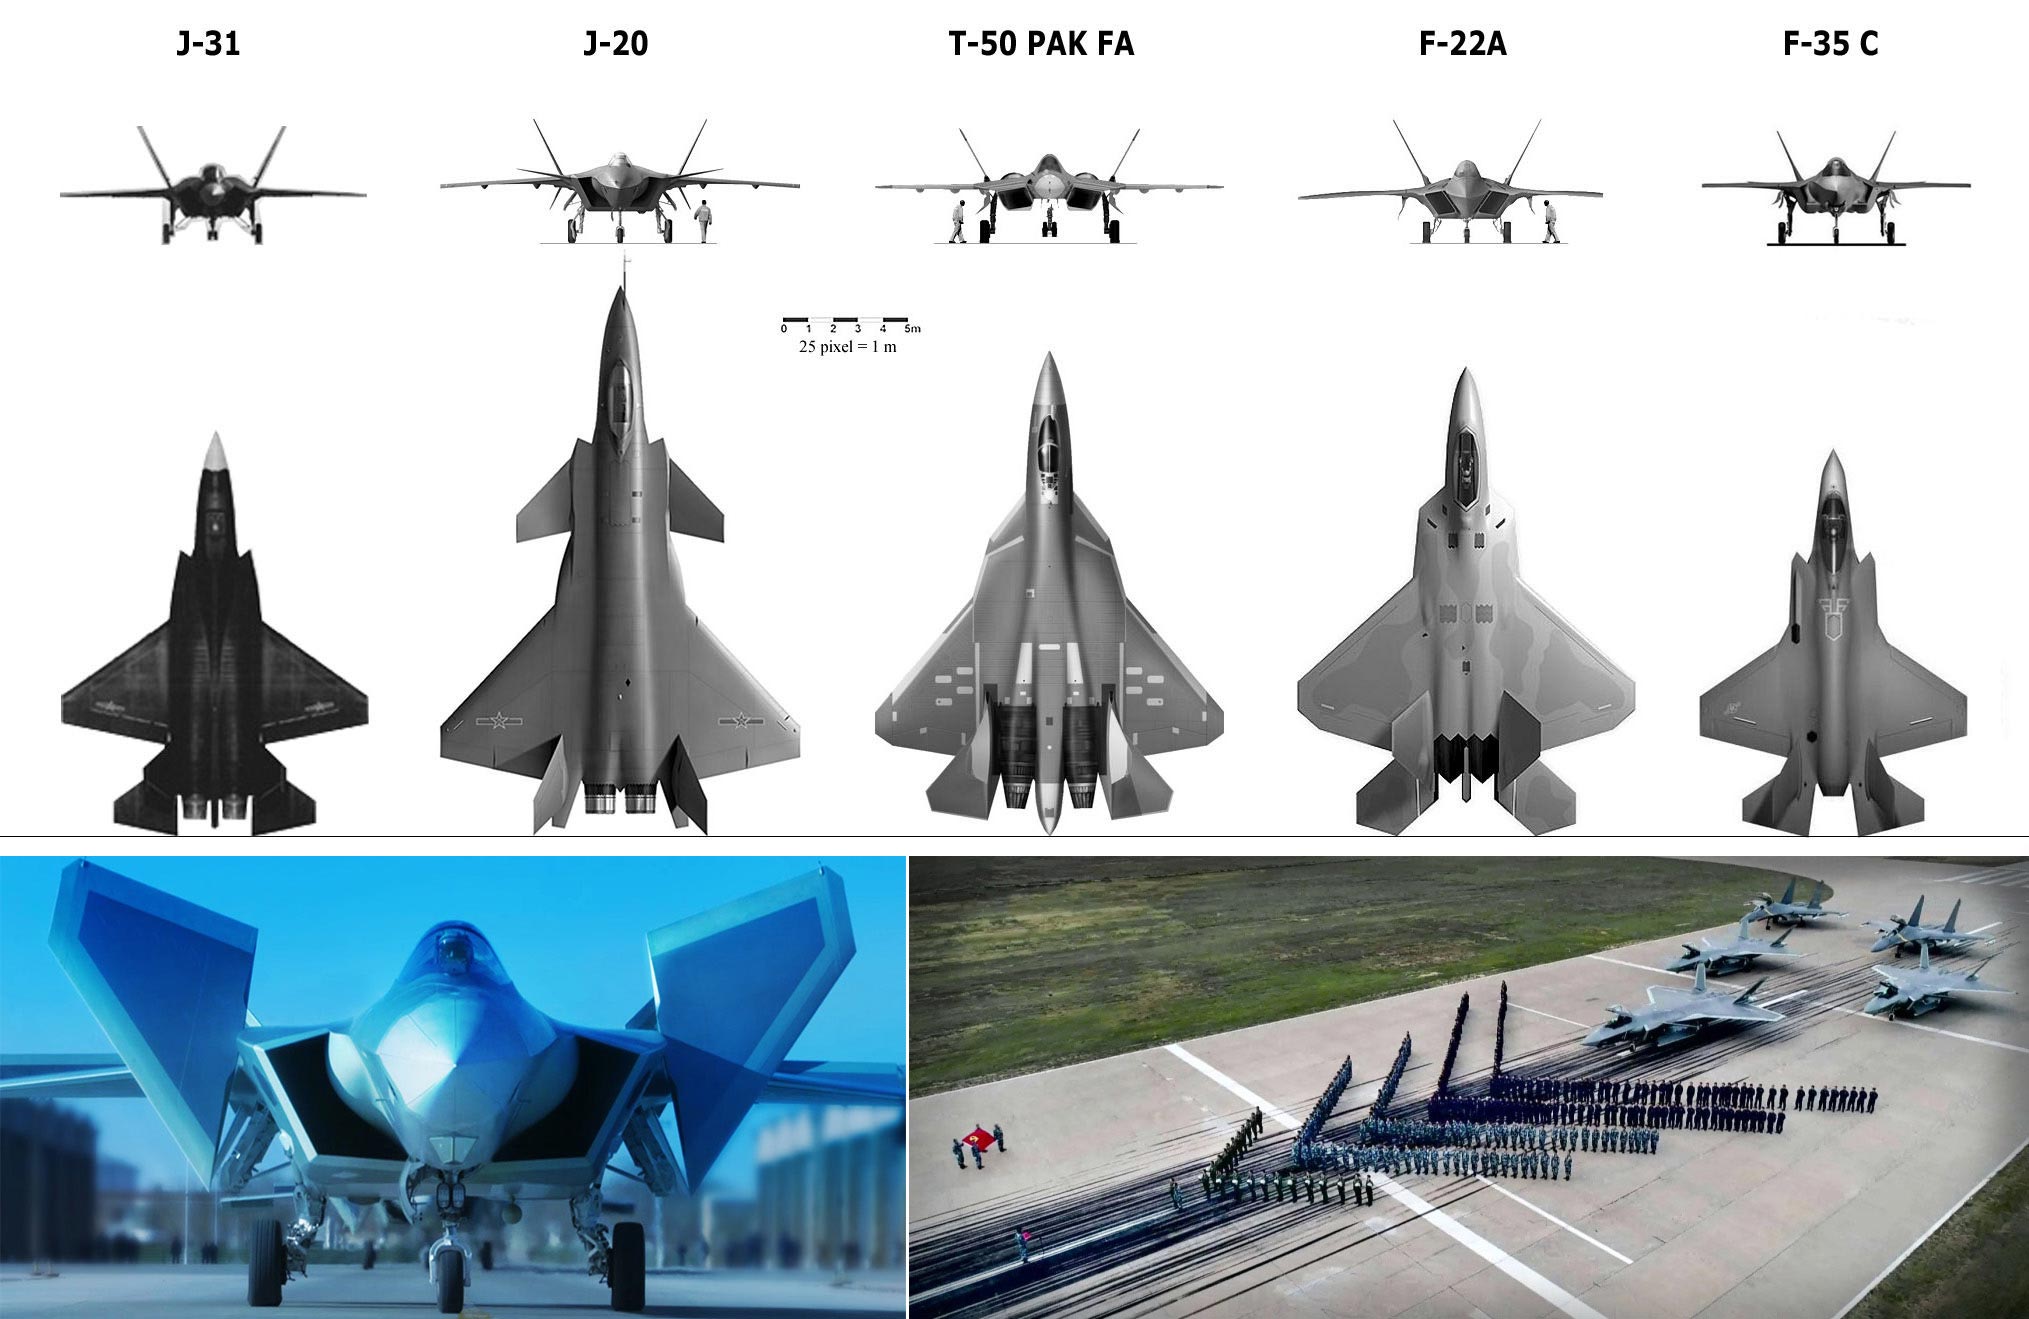 资料图：上图为美媒报道的（从左至右）中国歼-31、歼-20战机与俄罗斯T-50（已命名为苏-57）、美国F-22A与F-35C（海军型）尺寸对比示意图。下左图为中国空军新一代隐身战斗机歼-20滑出（新华网资料照片）。下右图为中国空军歼-20、歼-16飞行员集体宣誓（新华网资料照片）。中国空军新闻发言人申进科2月9日发布消息，中国自主研制的新一代隐身战斗机歼-20，开始列装空军作战部队，向全面形成作